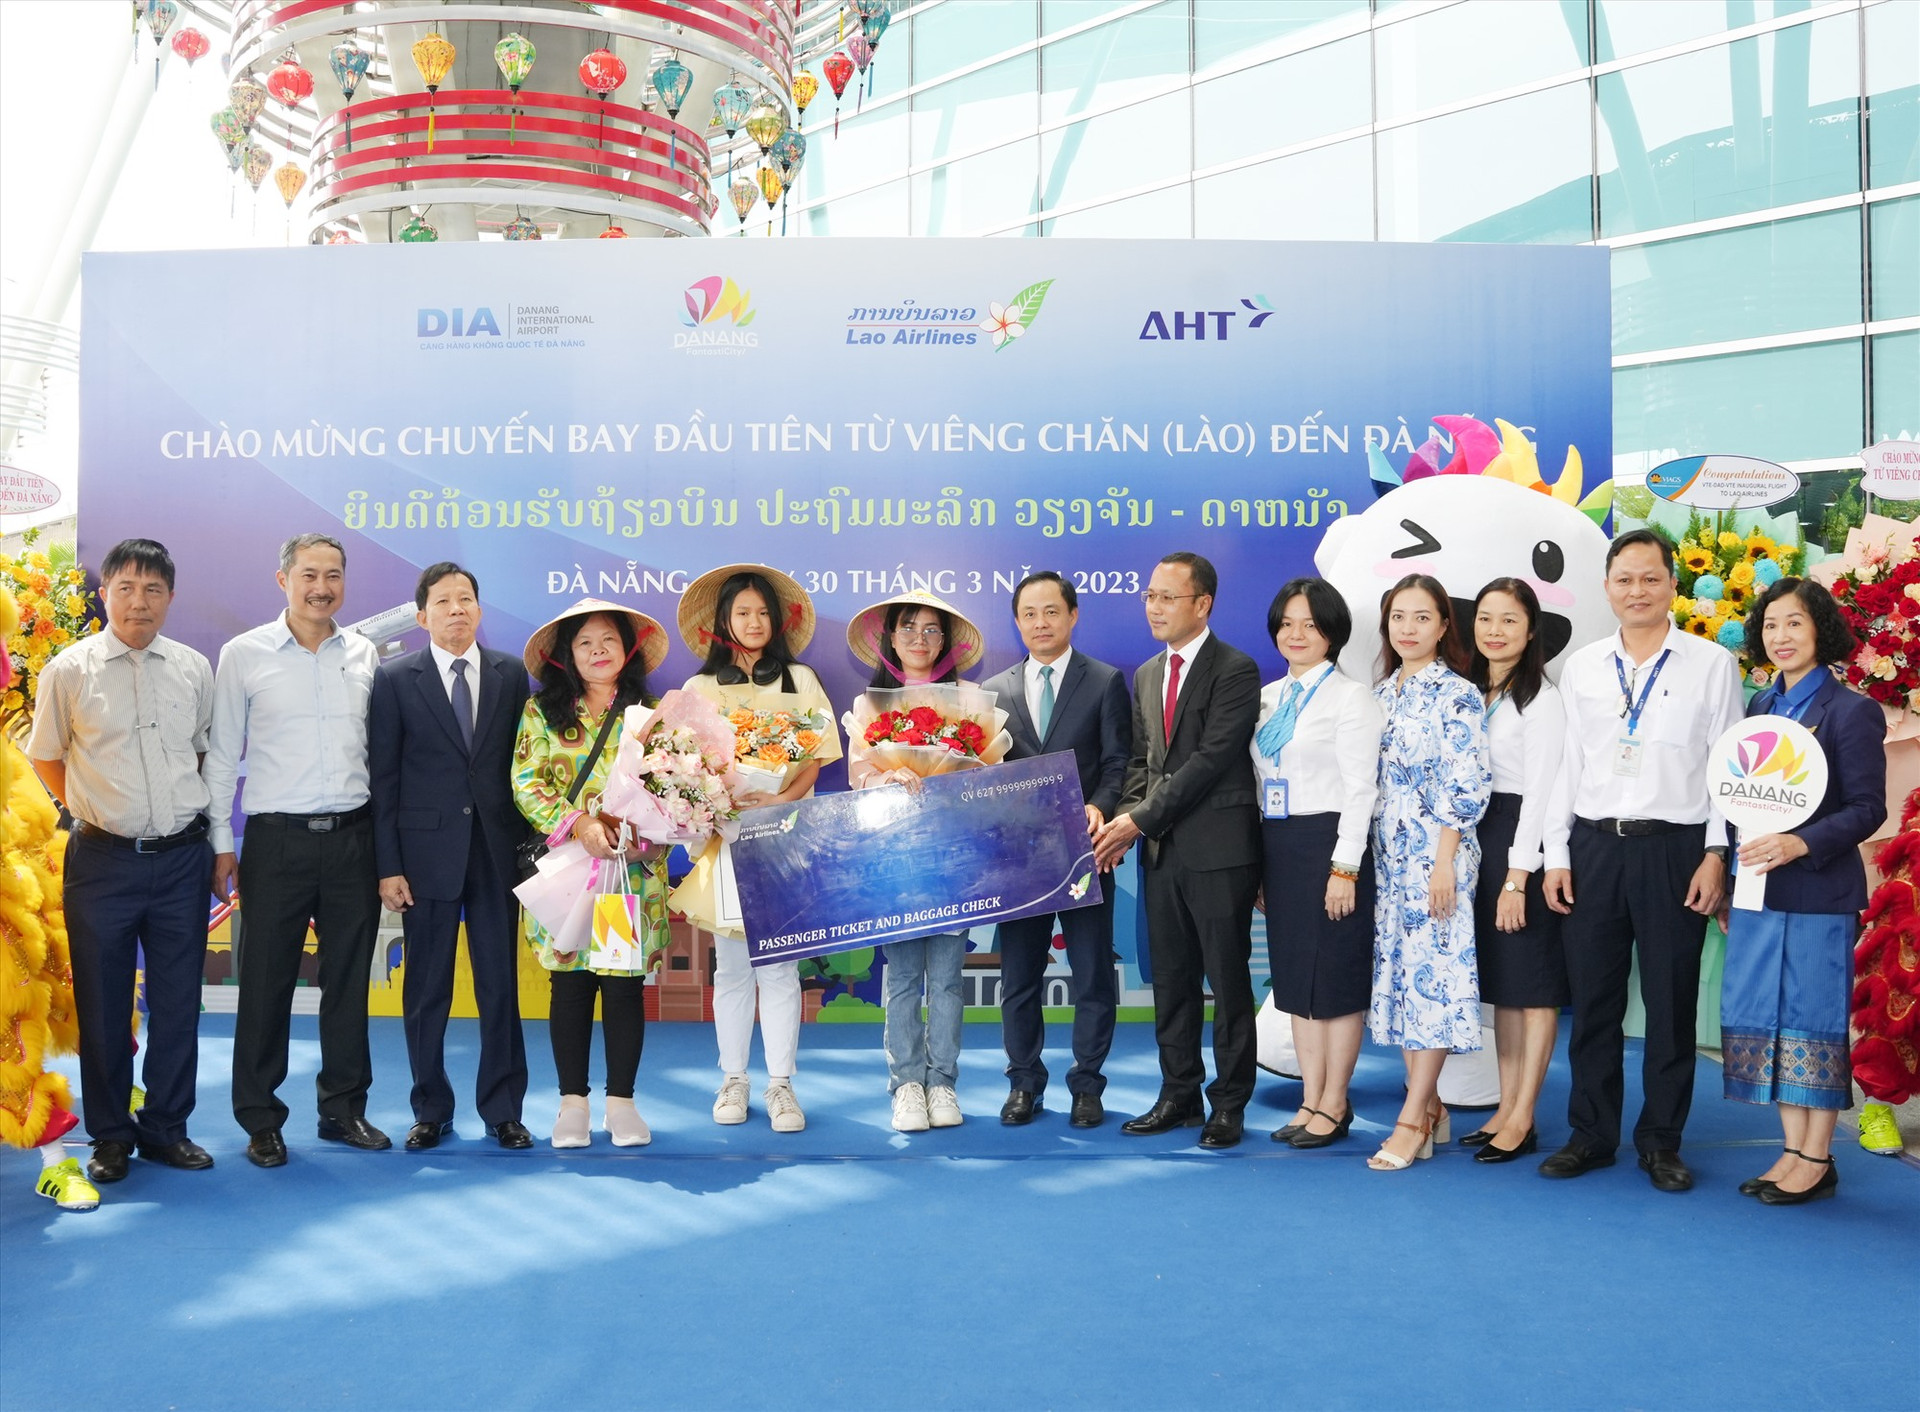 Hoạt động chào mừng chuyến bay đầu tiên từ Viêng Chăn (Lào) đến Đà Nẵng vào tháng 3/2023. Ảnh: T.BÌNH